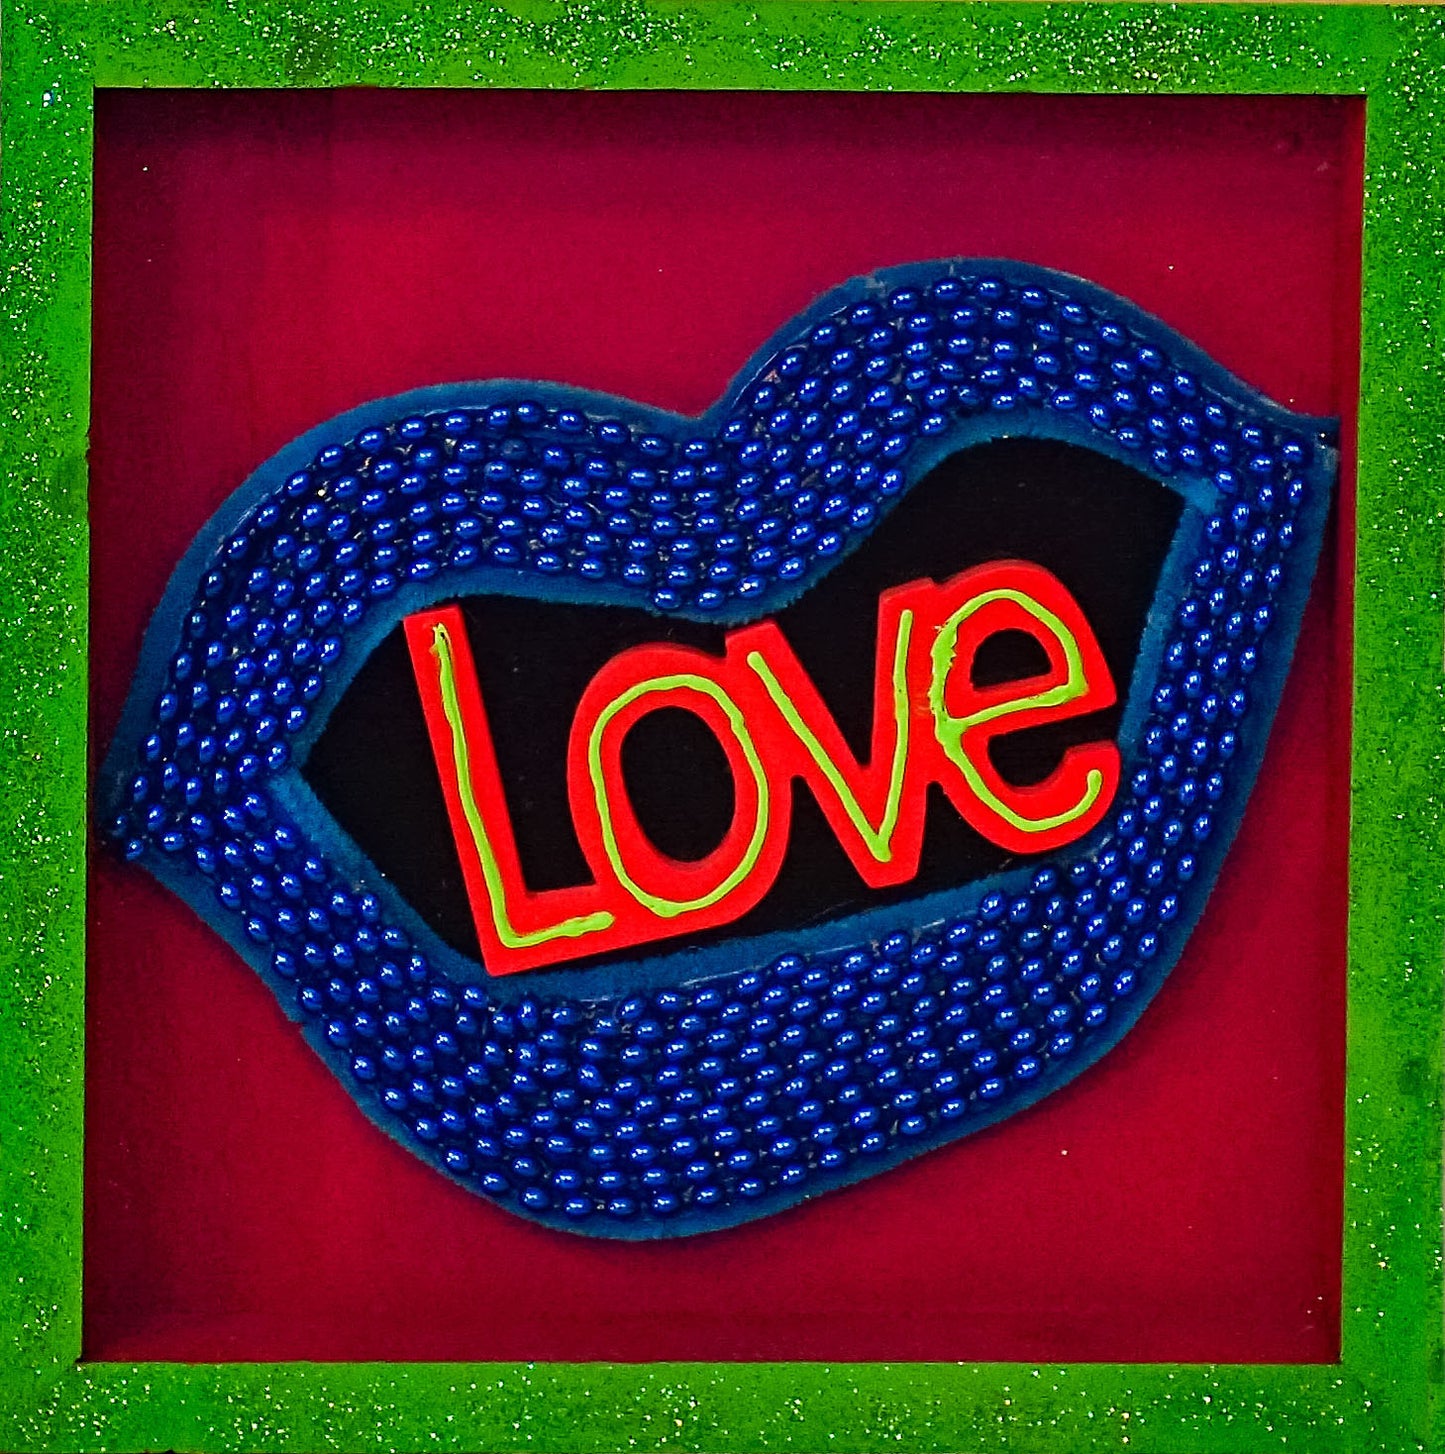 LOVE Art not-a-coaster (4x4)